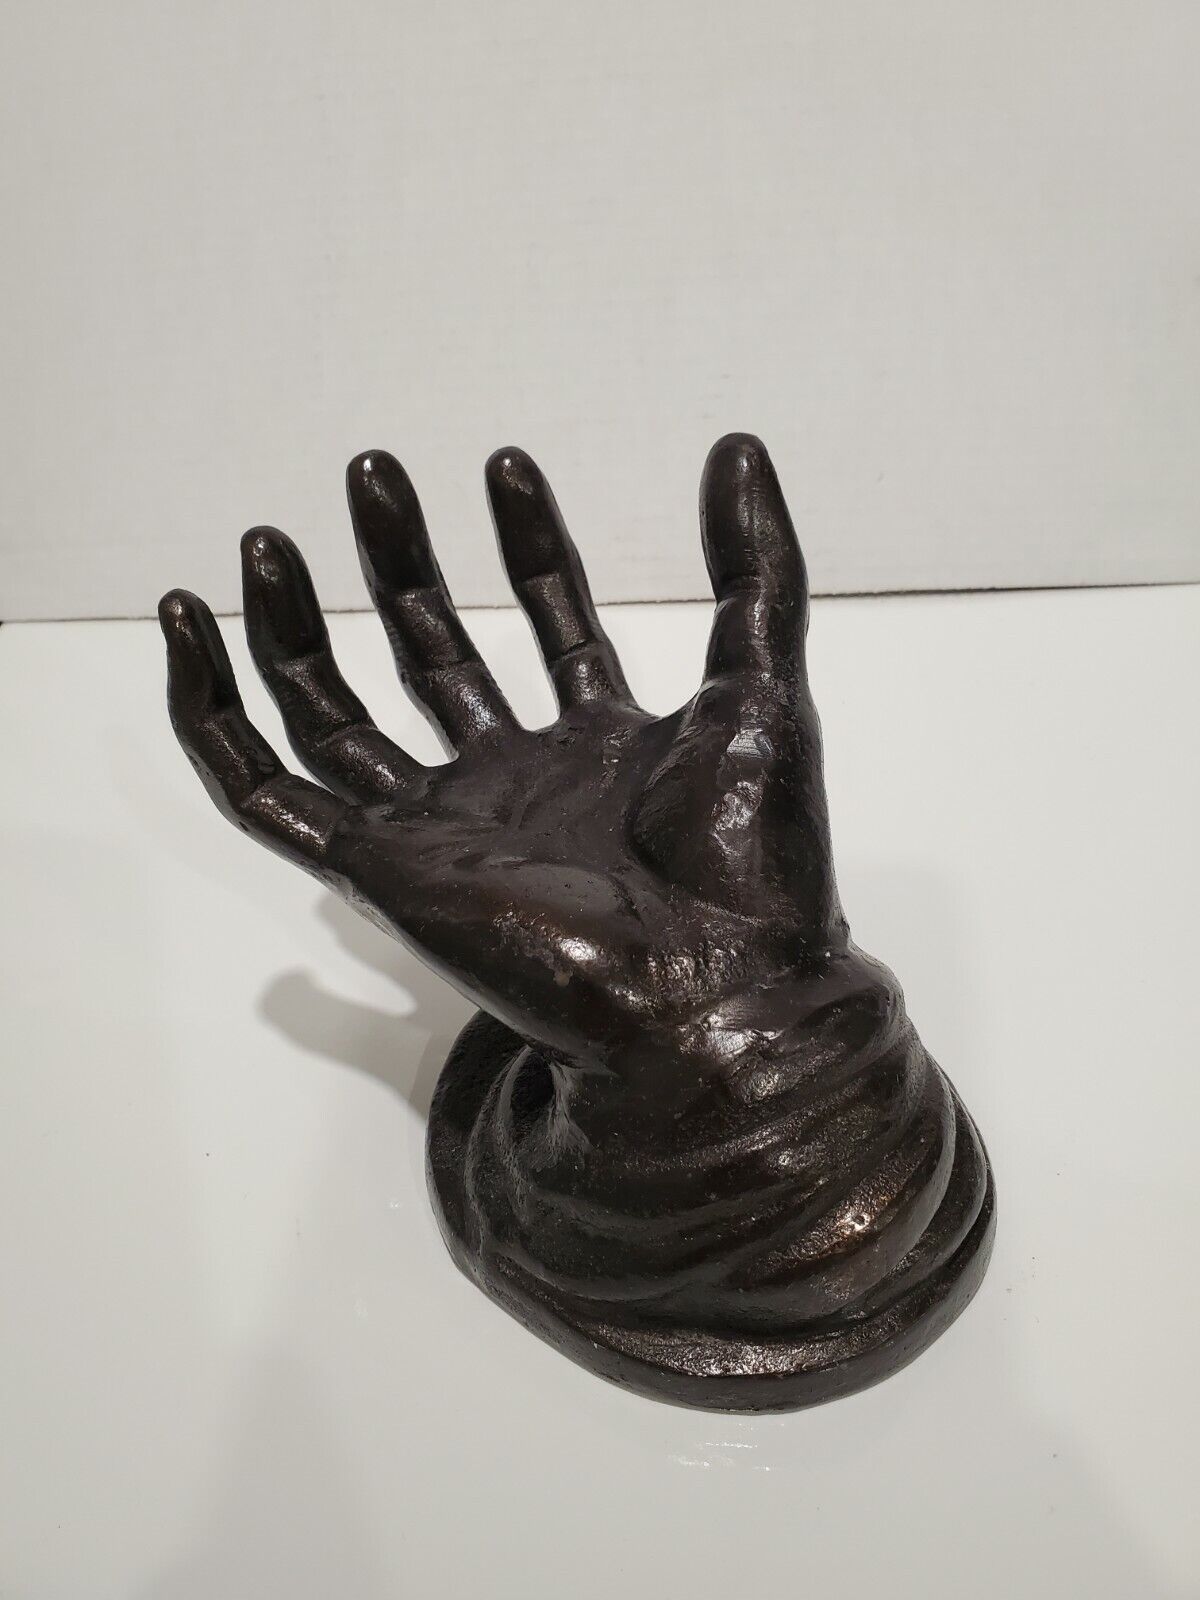 Antique/Vintage Cast Iron Life Size Hand Sculpture -- Over 8 lb